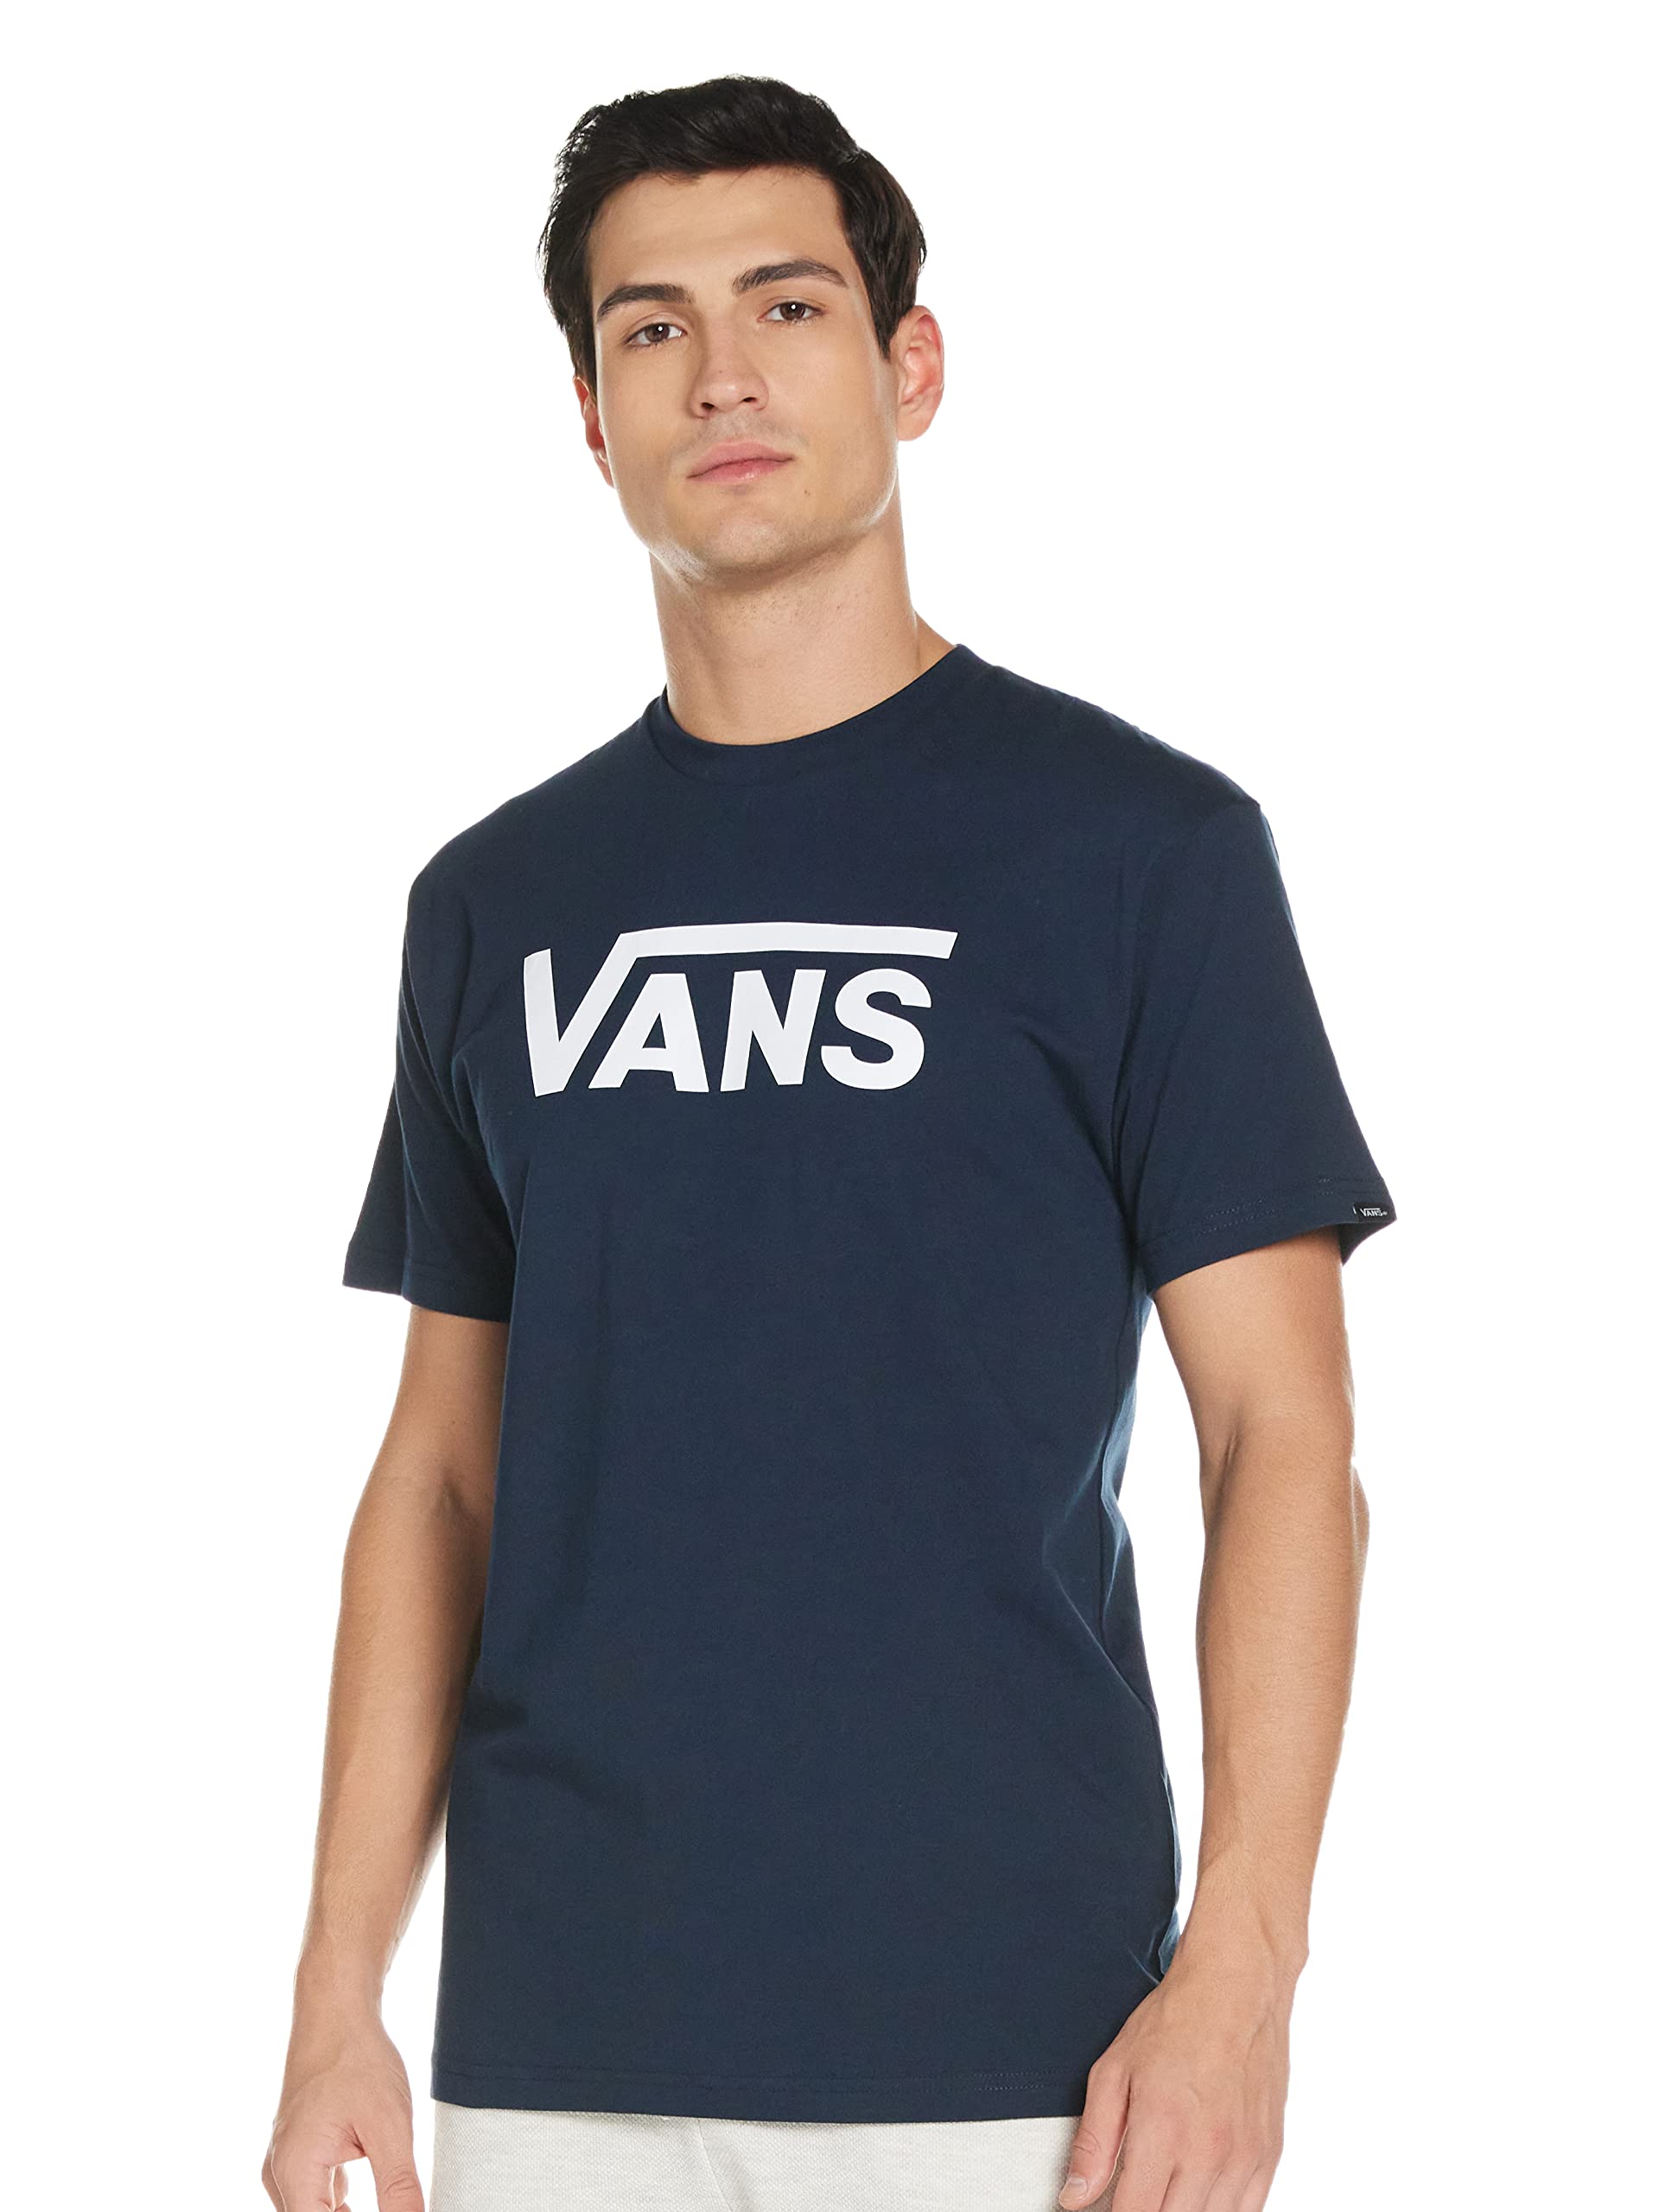 Vans Herren Classic T - Shirt, Blau (Navy/white), Small